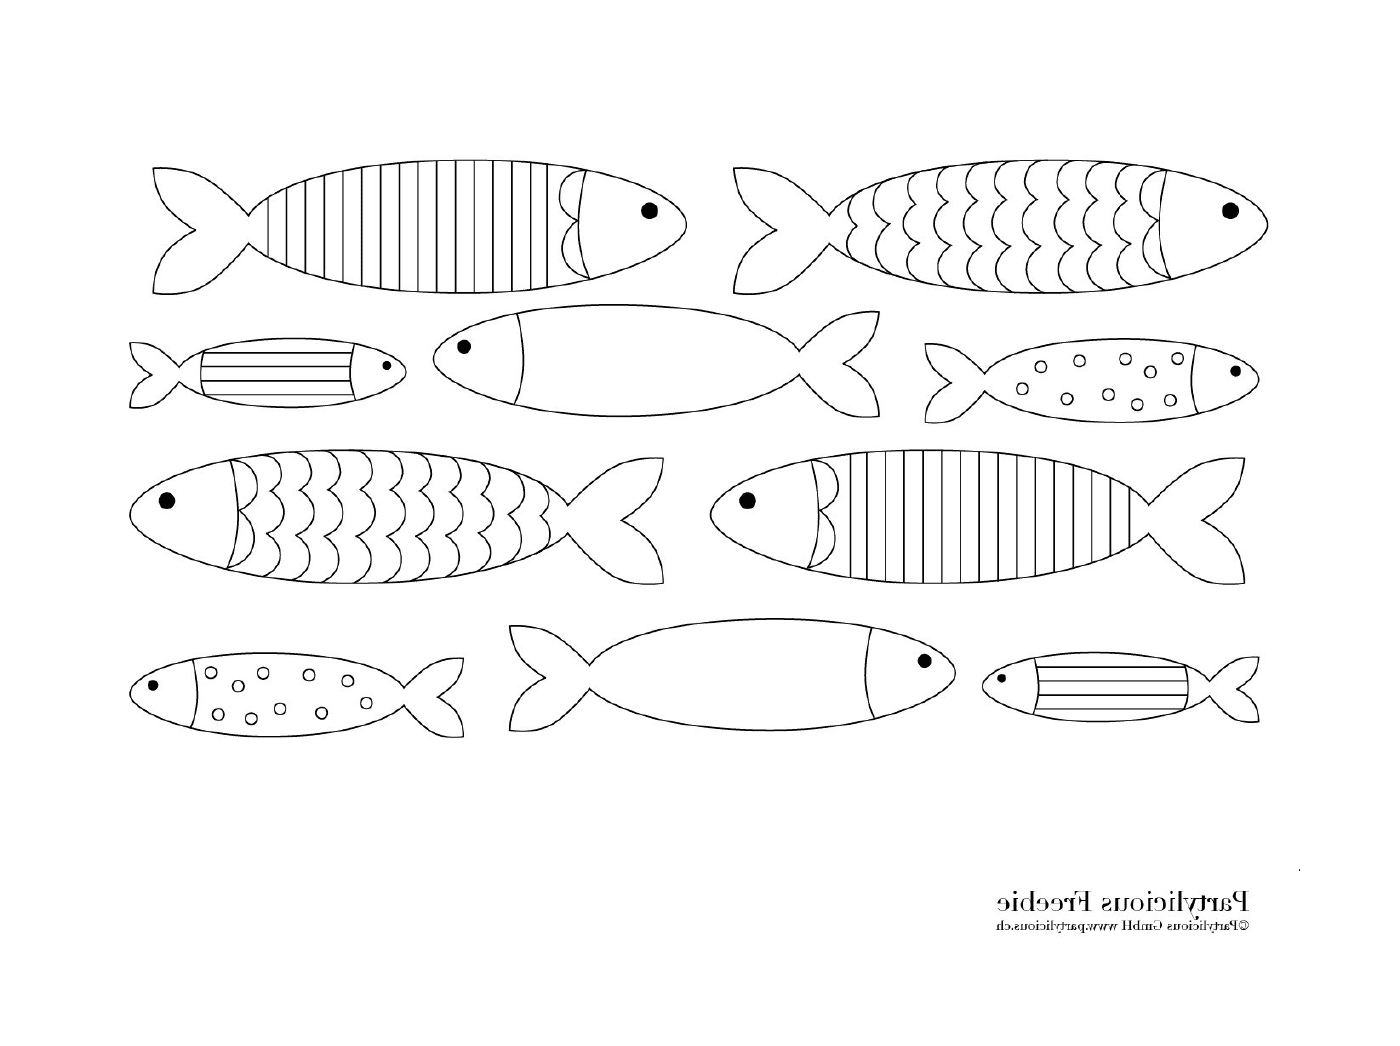   Nombreux poissons différents sur la page 